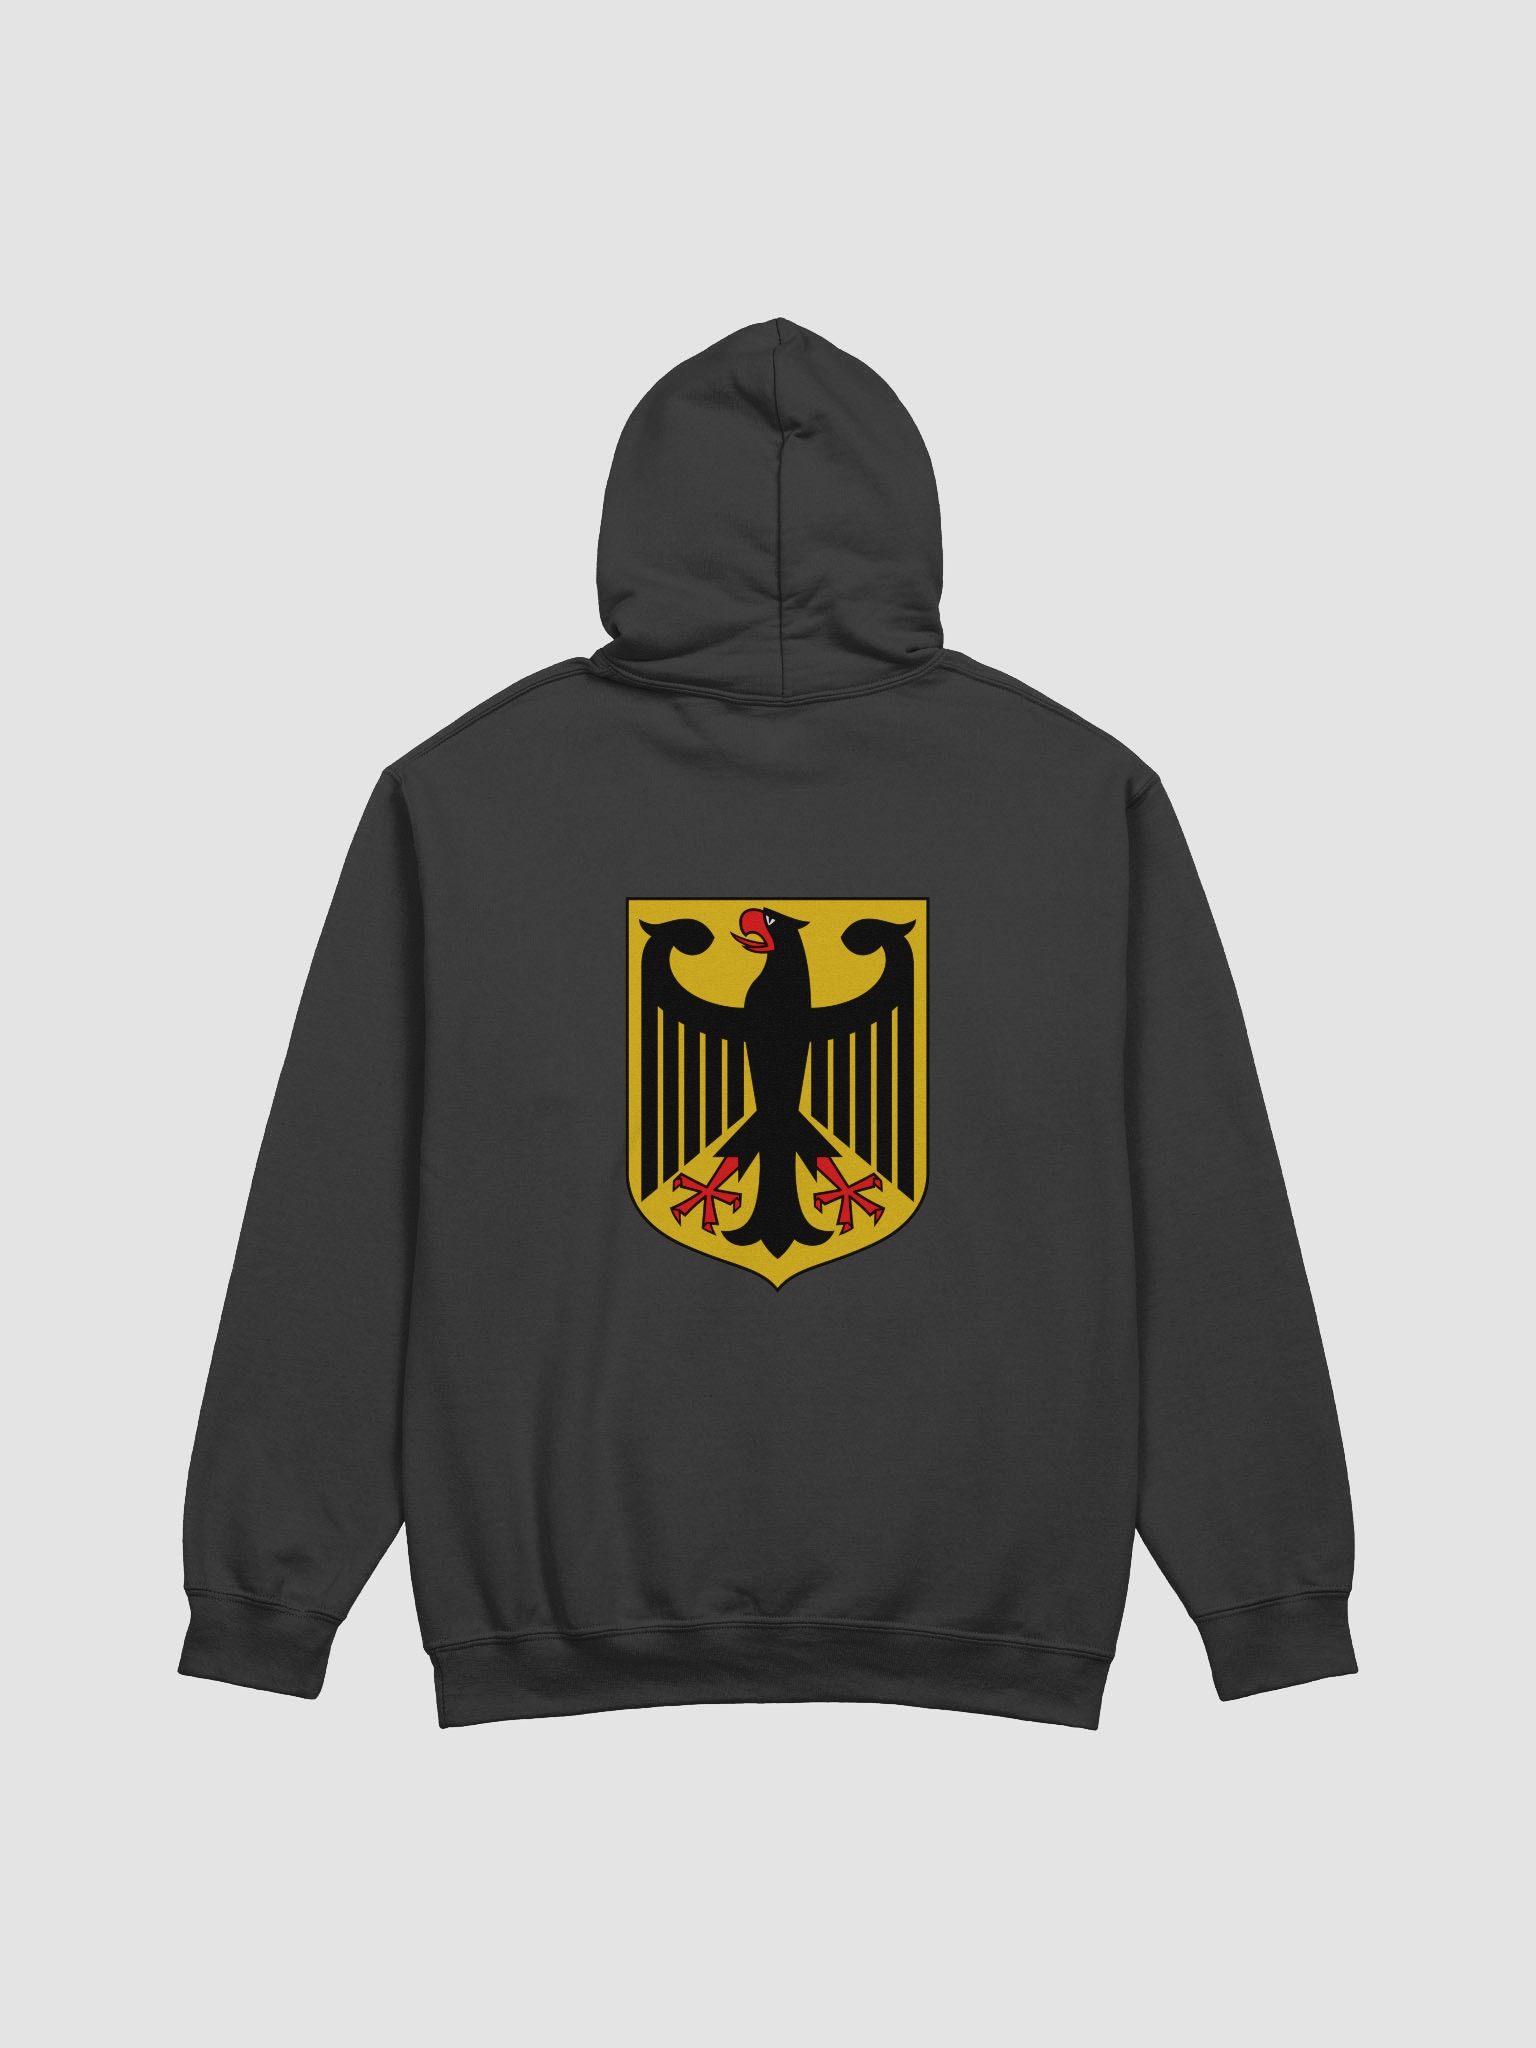 German Coat Of Arms Hoodie | People's Shop